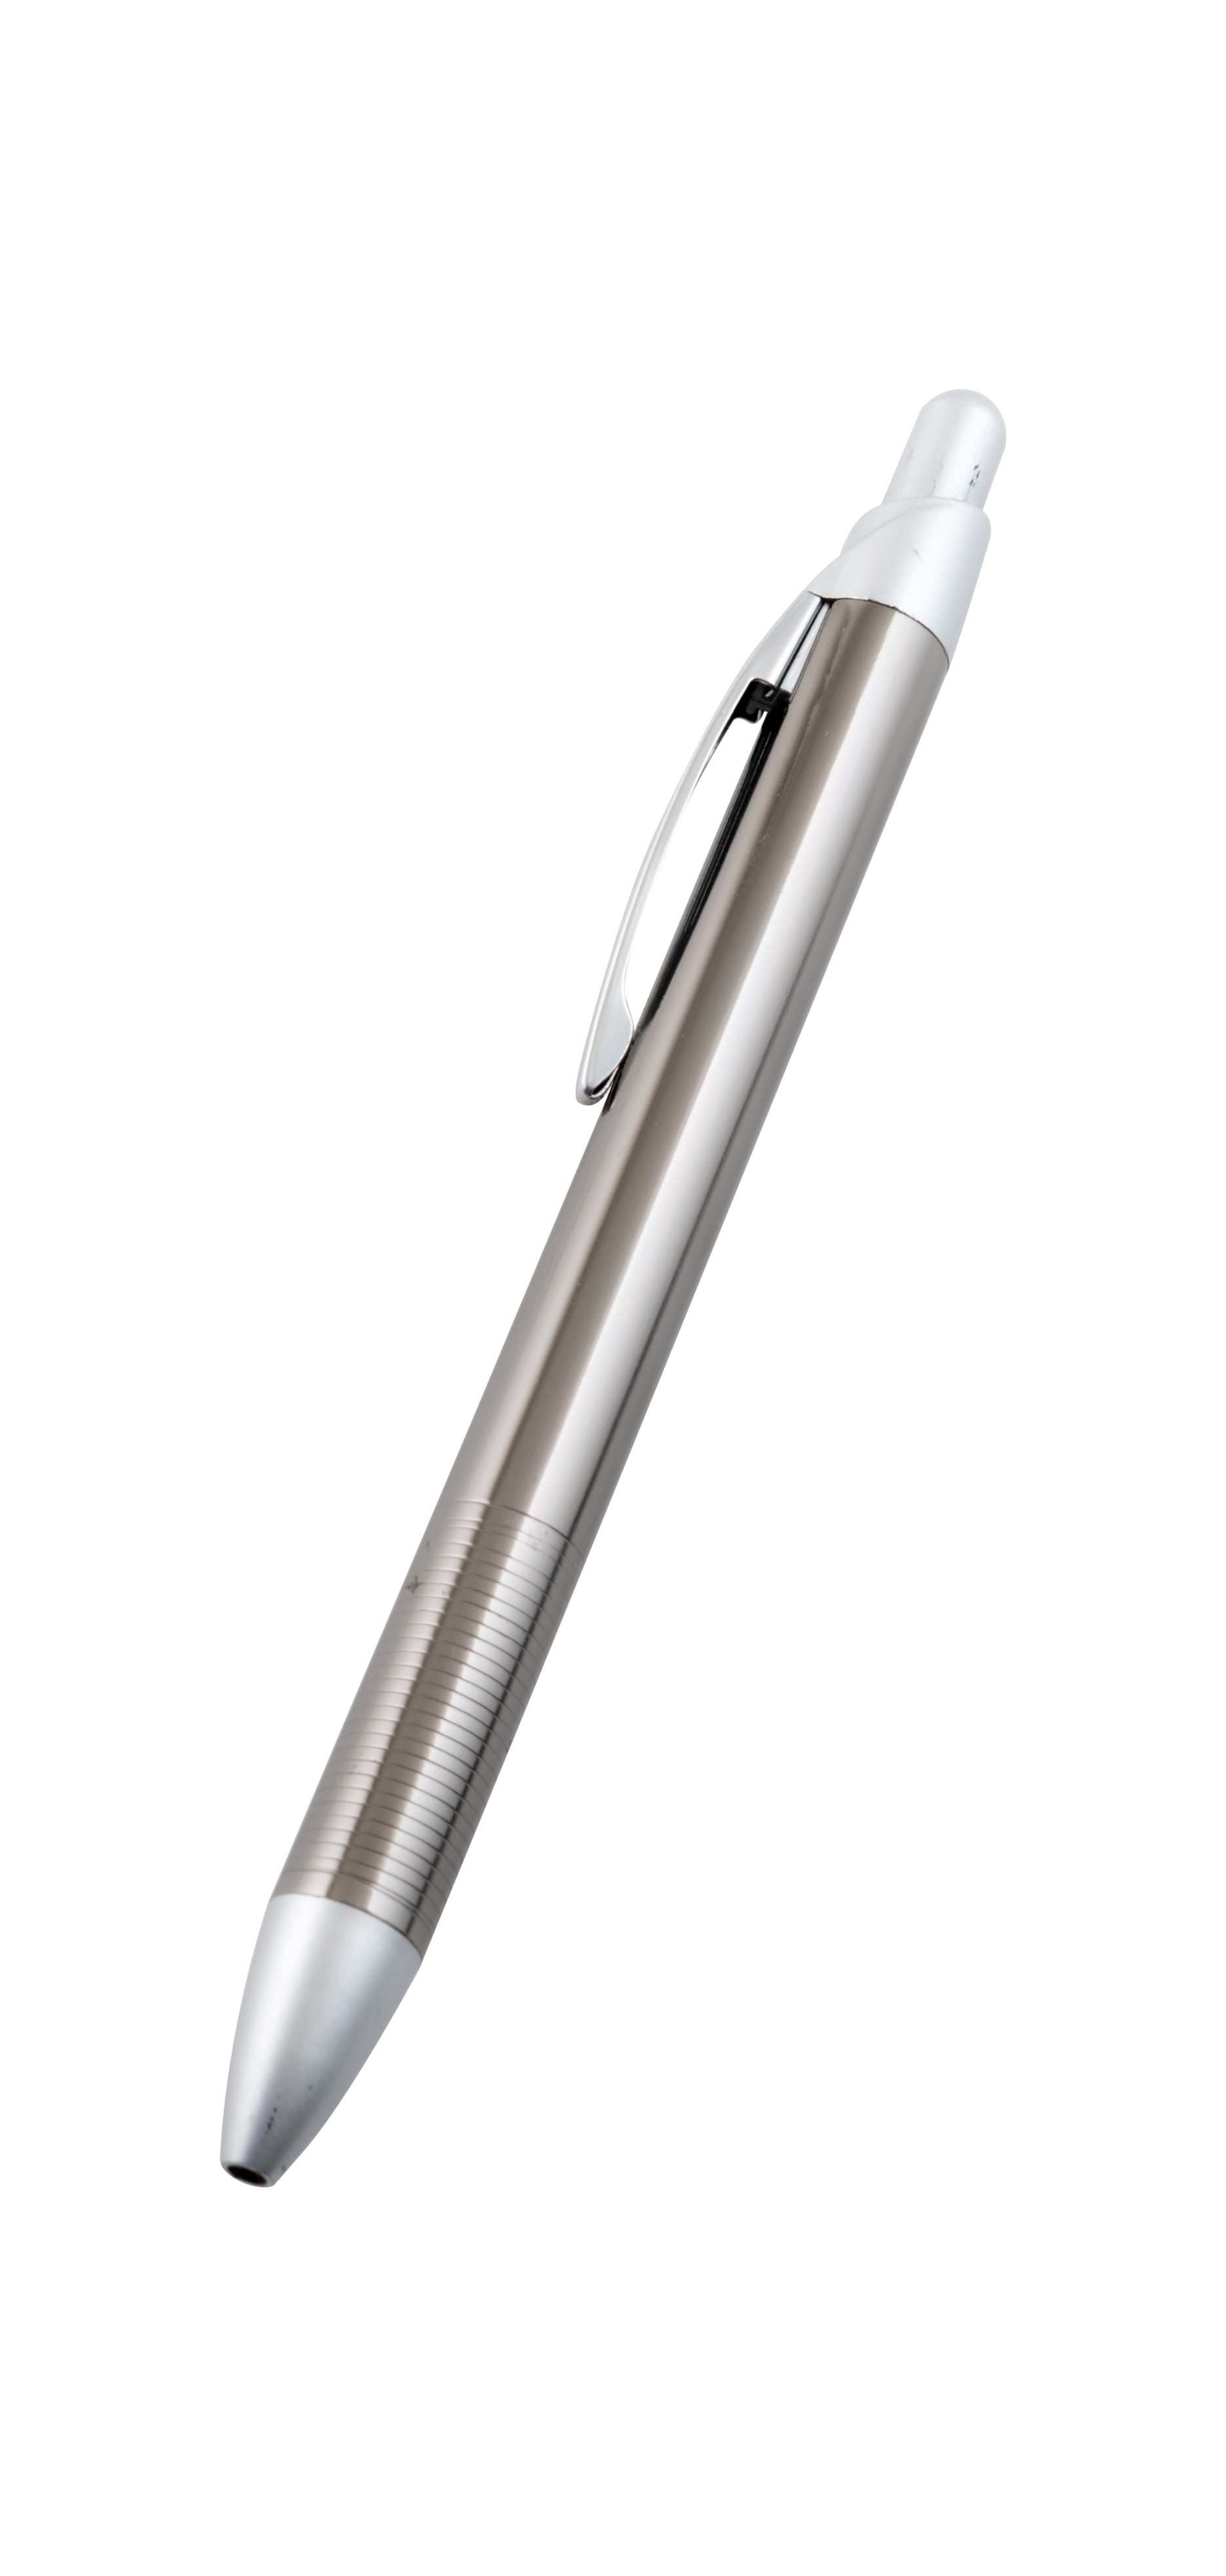 ٢٥ قلم من أقلام الحبرالجاف ذات الغطاء الفضي